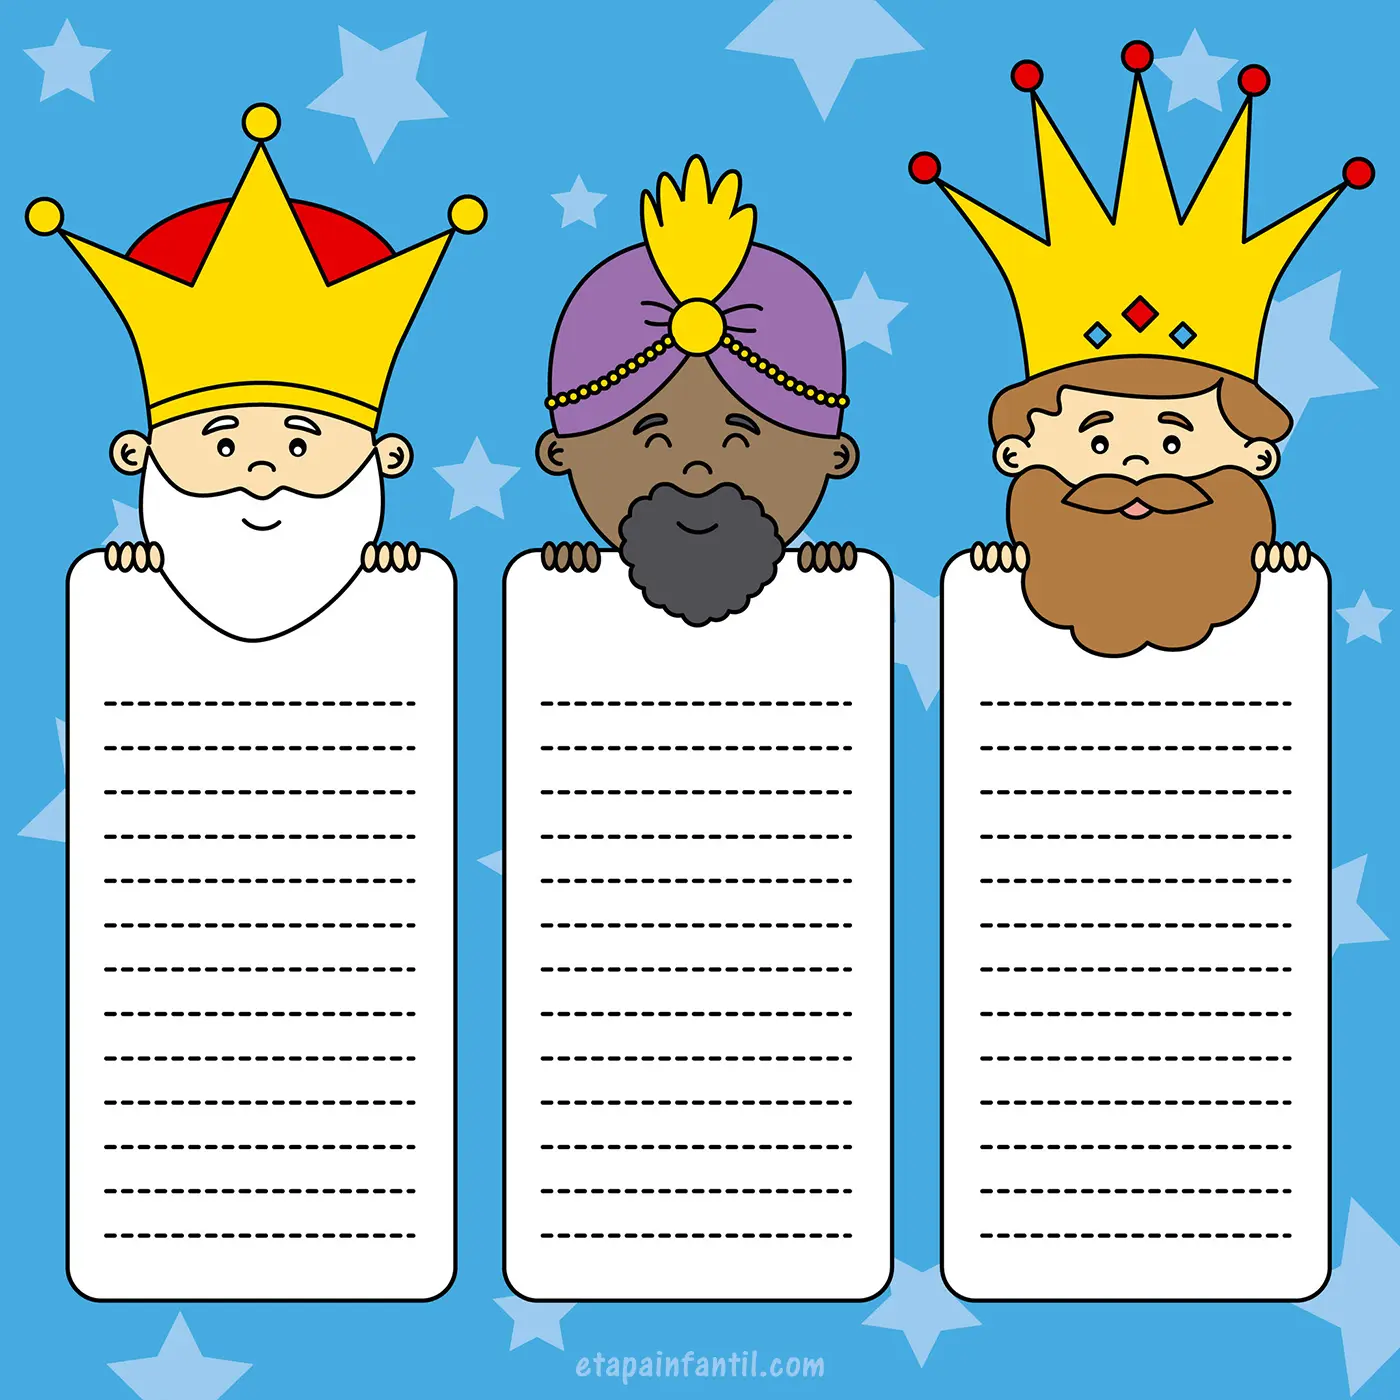 Plantillas de cartas para los Reyes Magos | EDUCACIÓN 